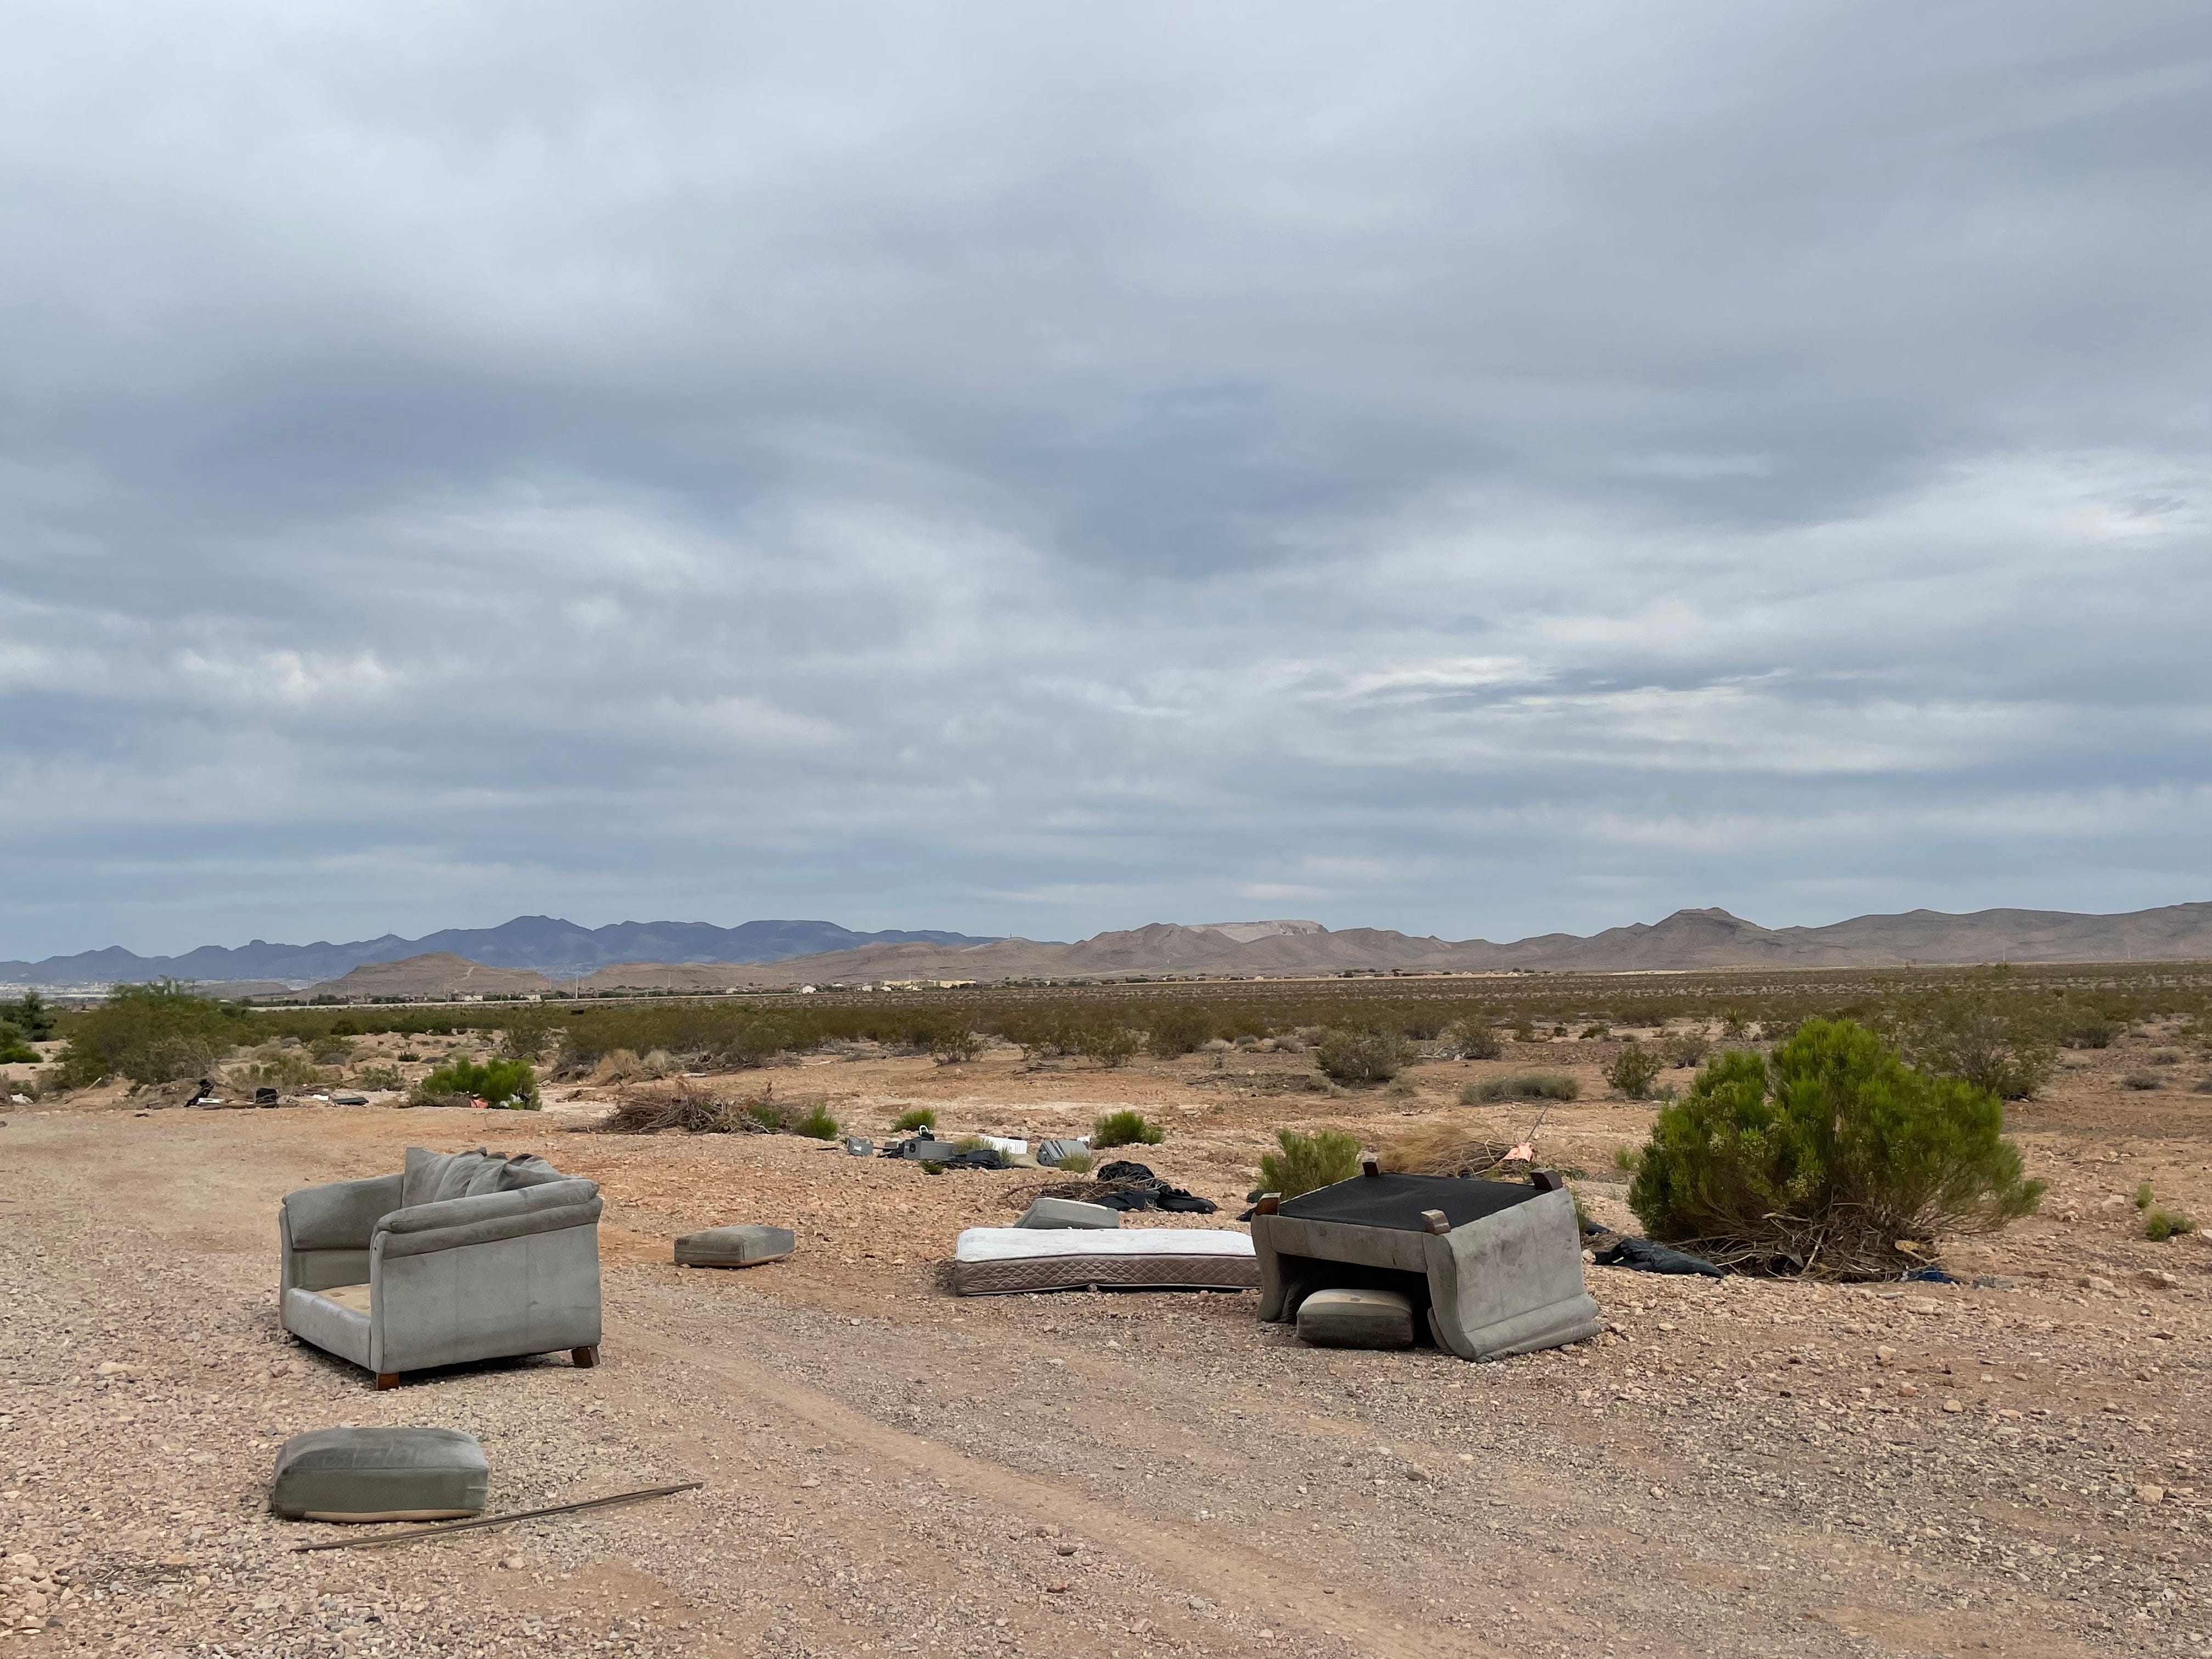 Zwei Sofas, eine Matratze und anderer Müll liegen am Rand einer unbefestigten Straße in der Wüste.